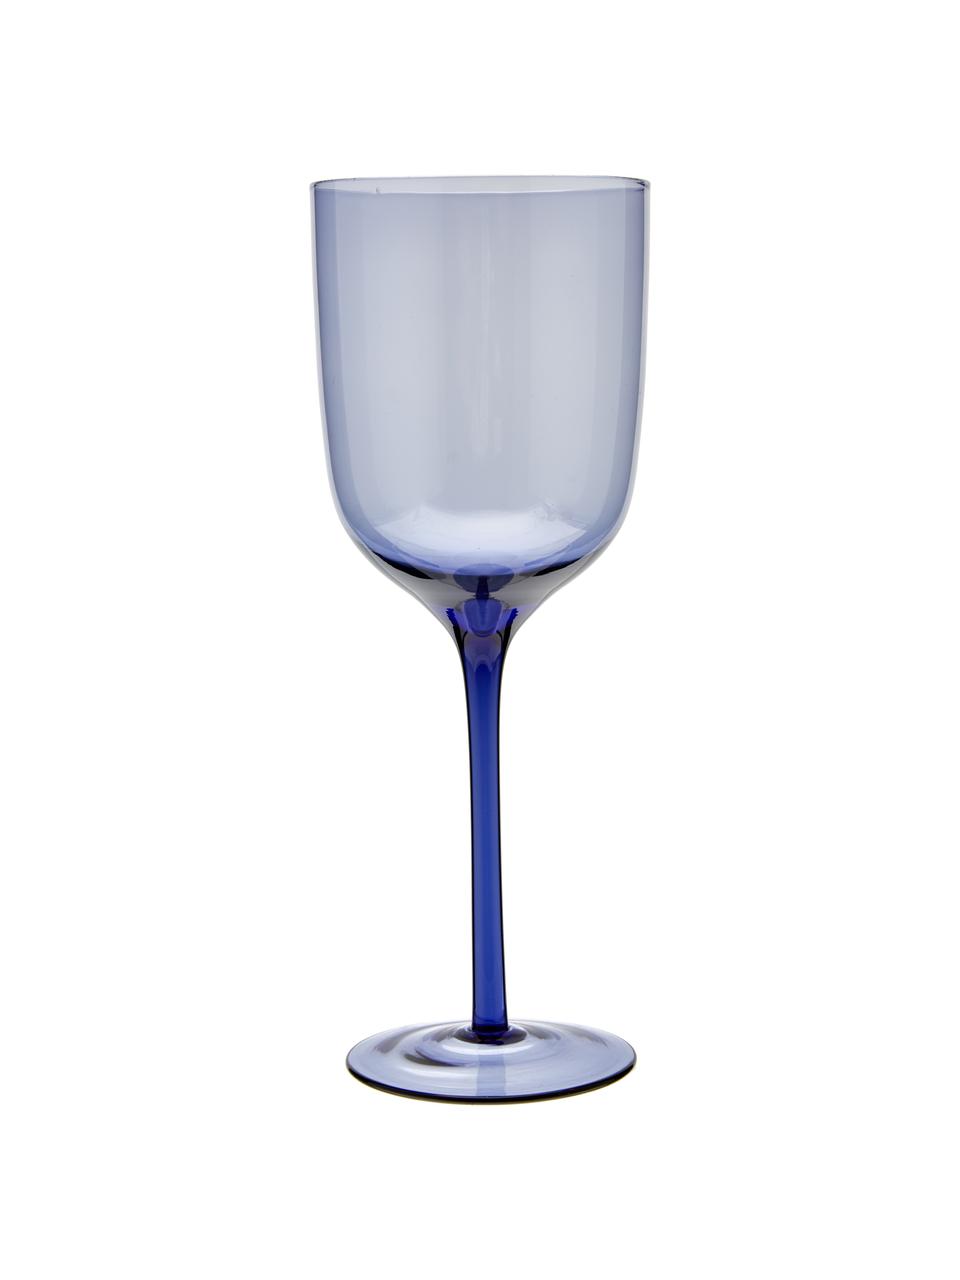 Mundgeblasene Weingläser Diseguale in unterschiedlichen Farben und Formen, 6er-Set, Glas, mundgeblasen, Bunt, Ø 7 x H 24 cm, 250 ml